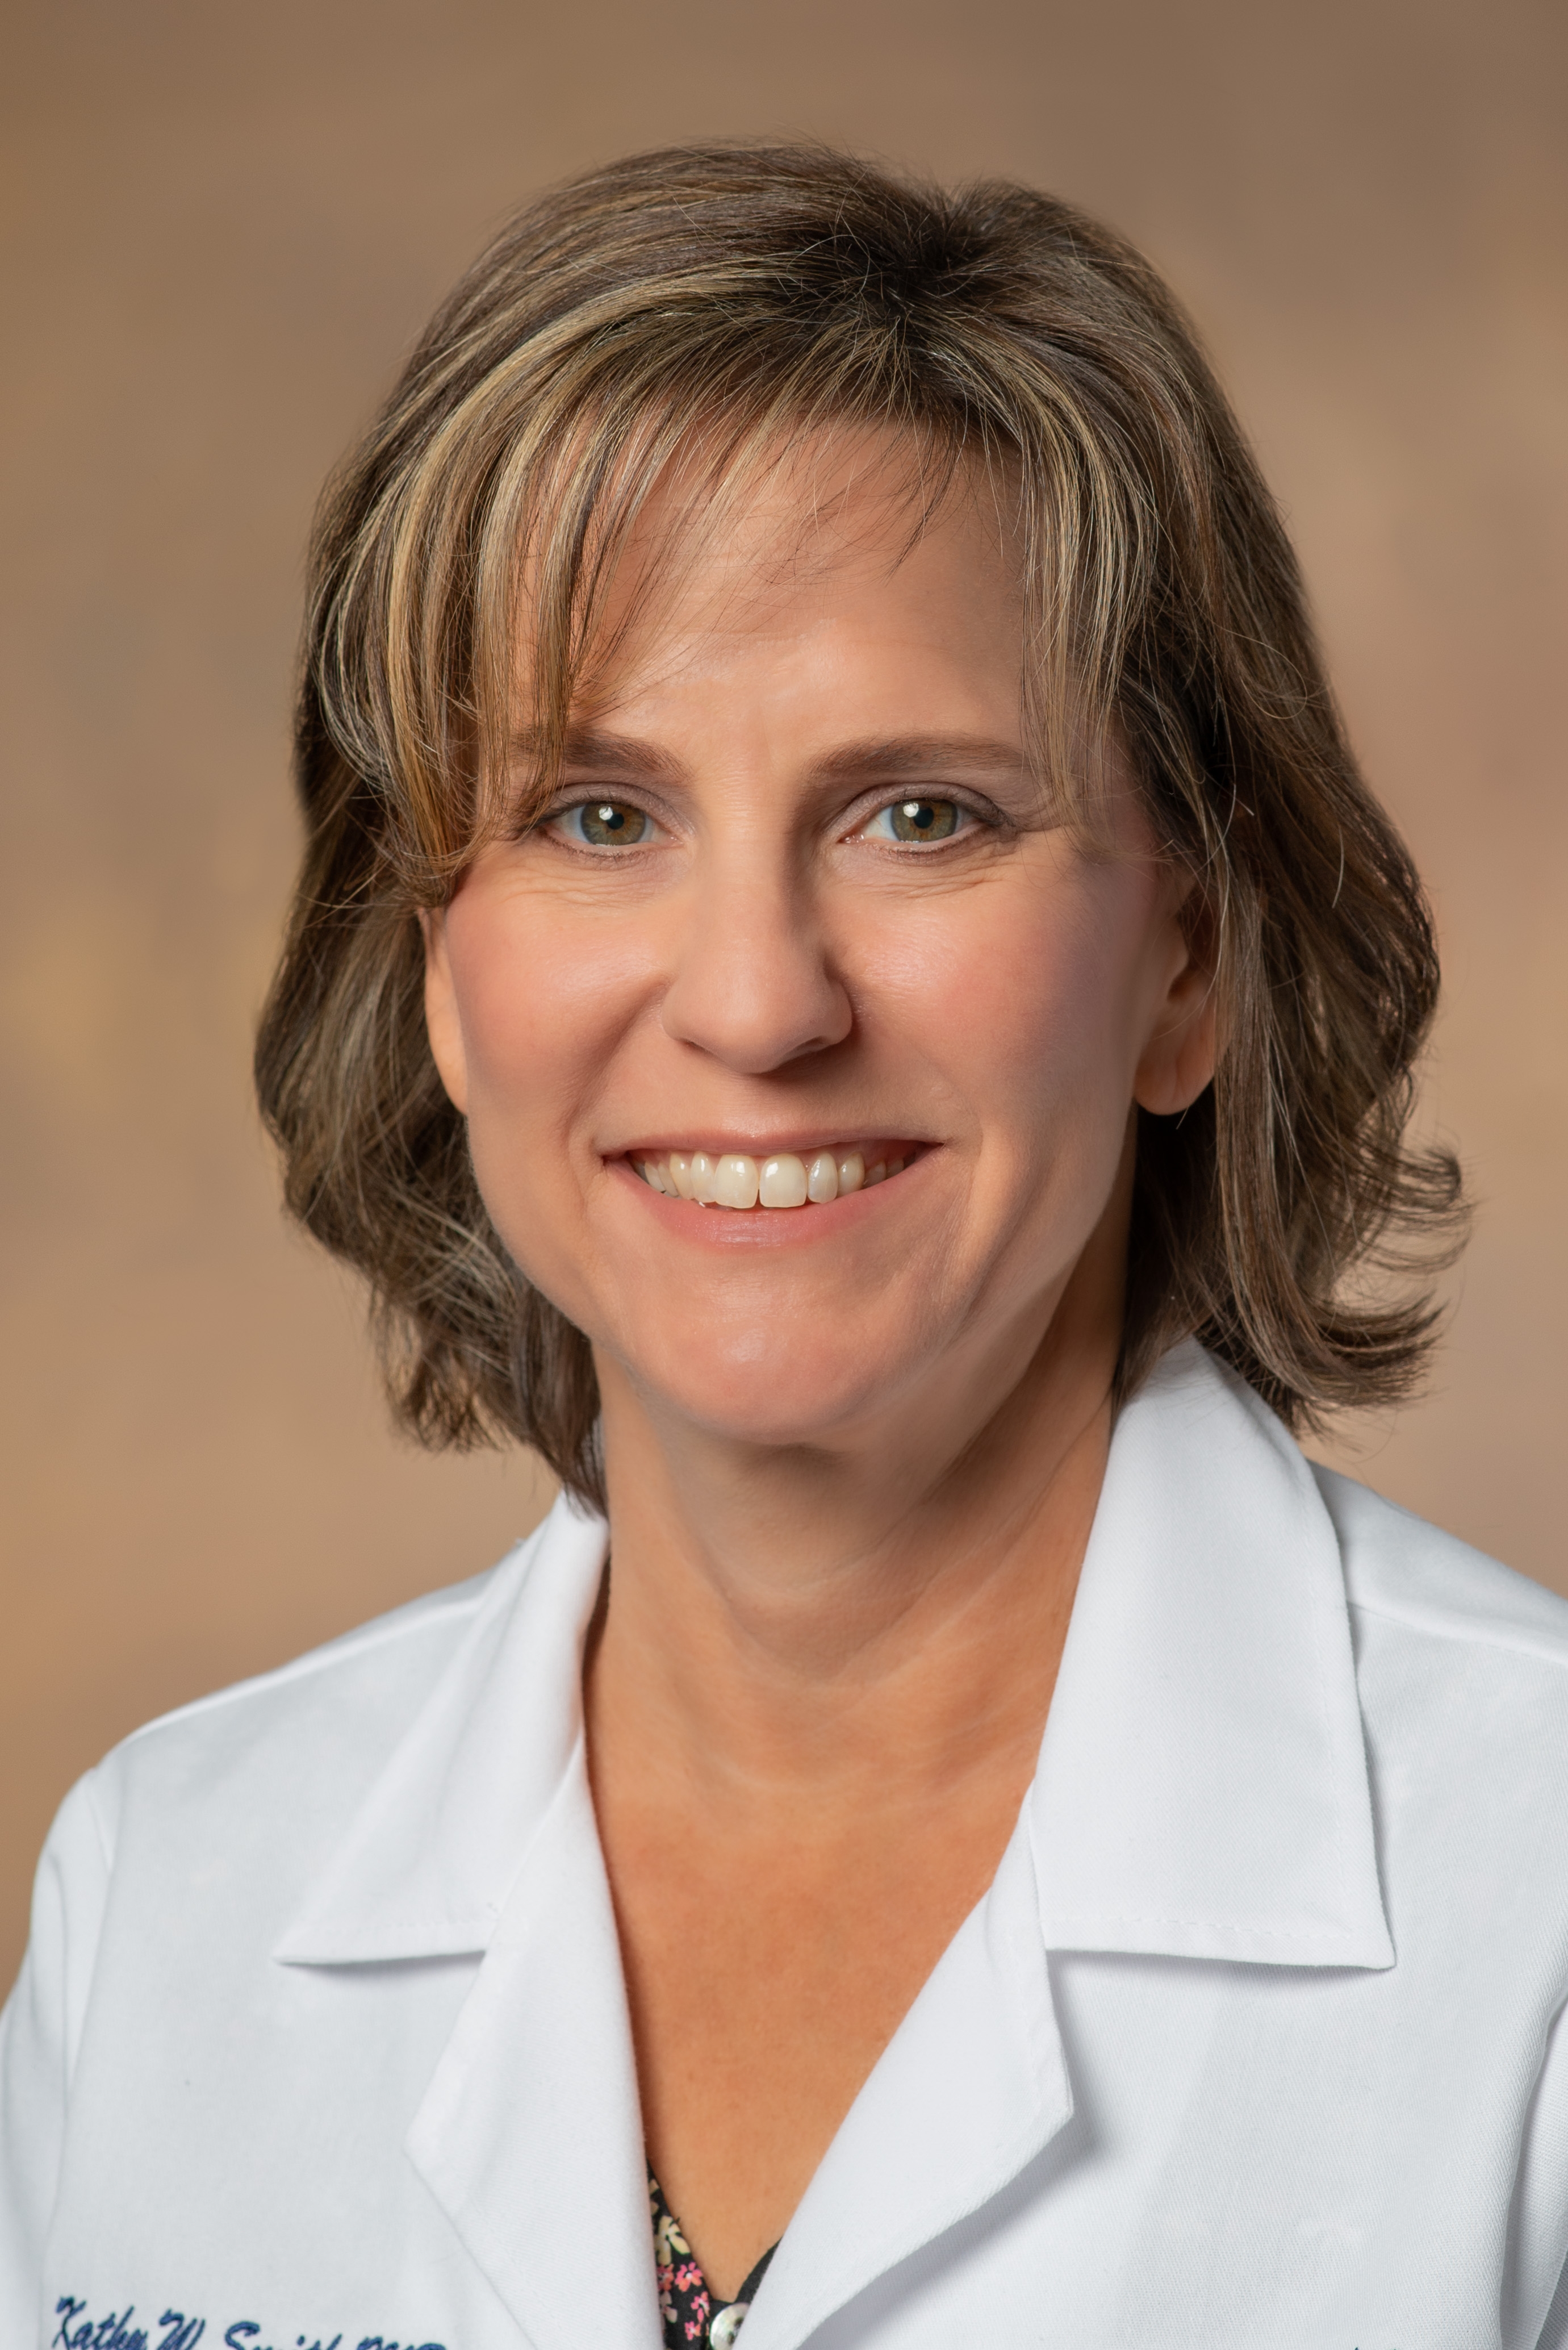 Kathy W. Smith, MD; Associate Professor, Psychiatry